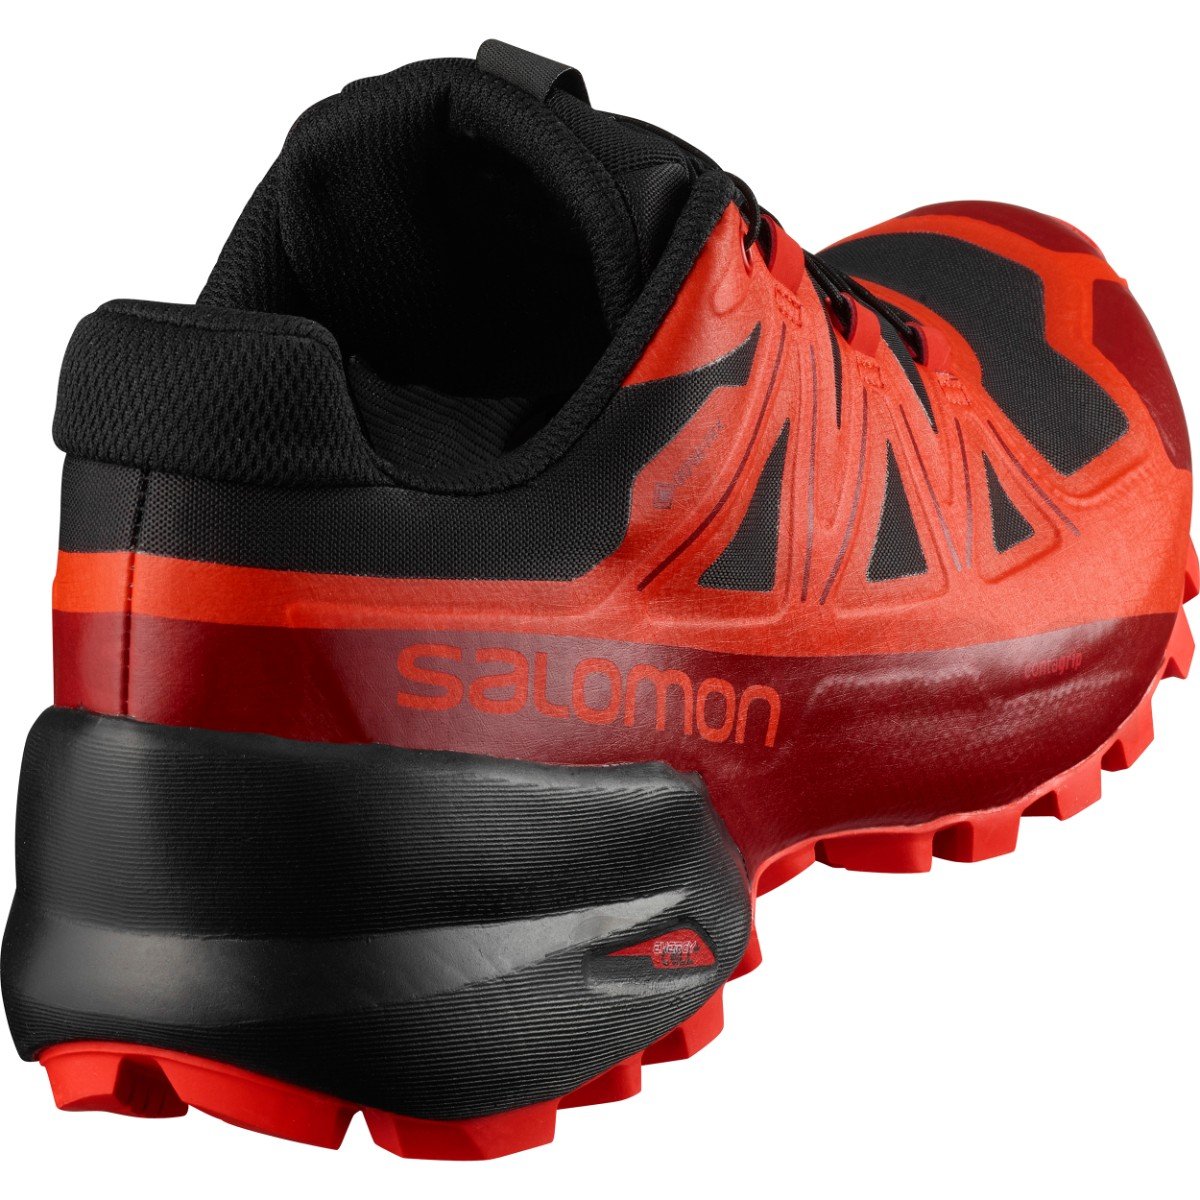 Obuv Salomon Spikecross 5 GTX - černá/červená